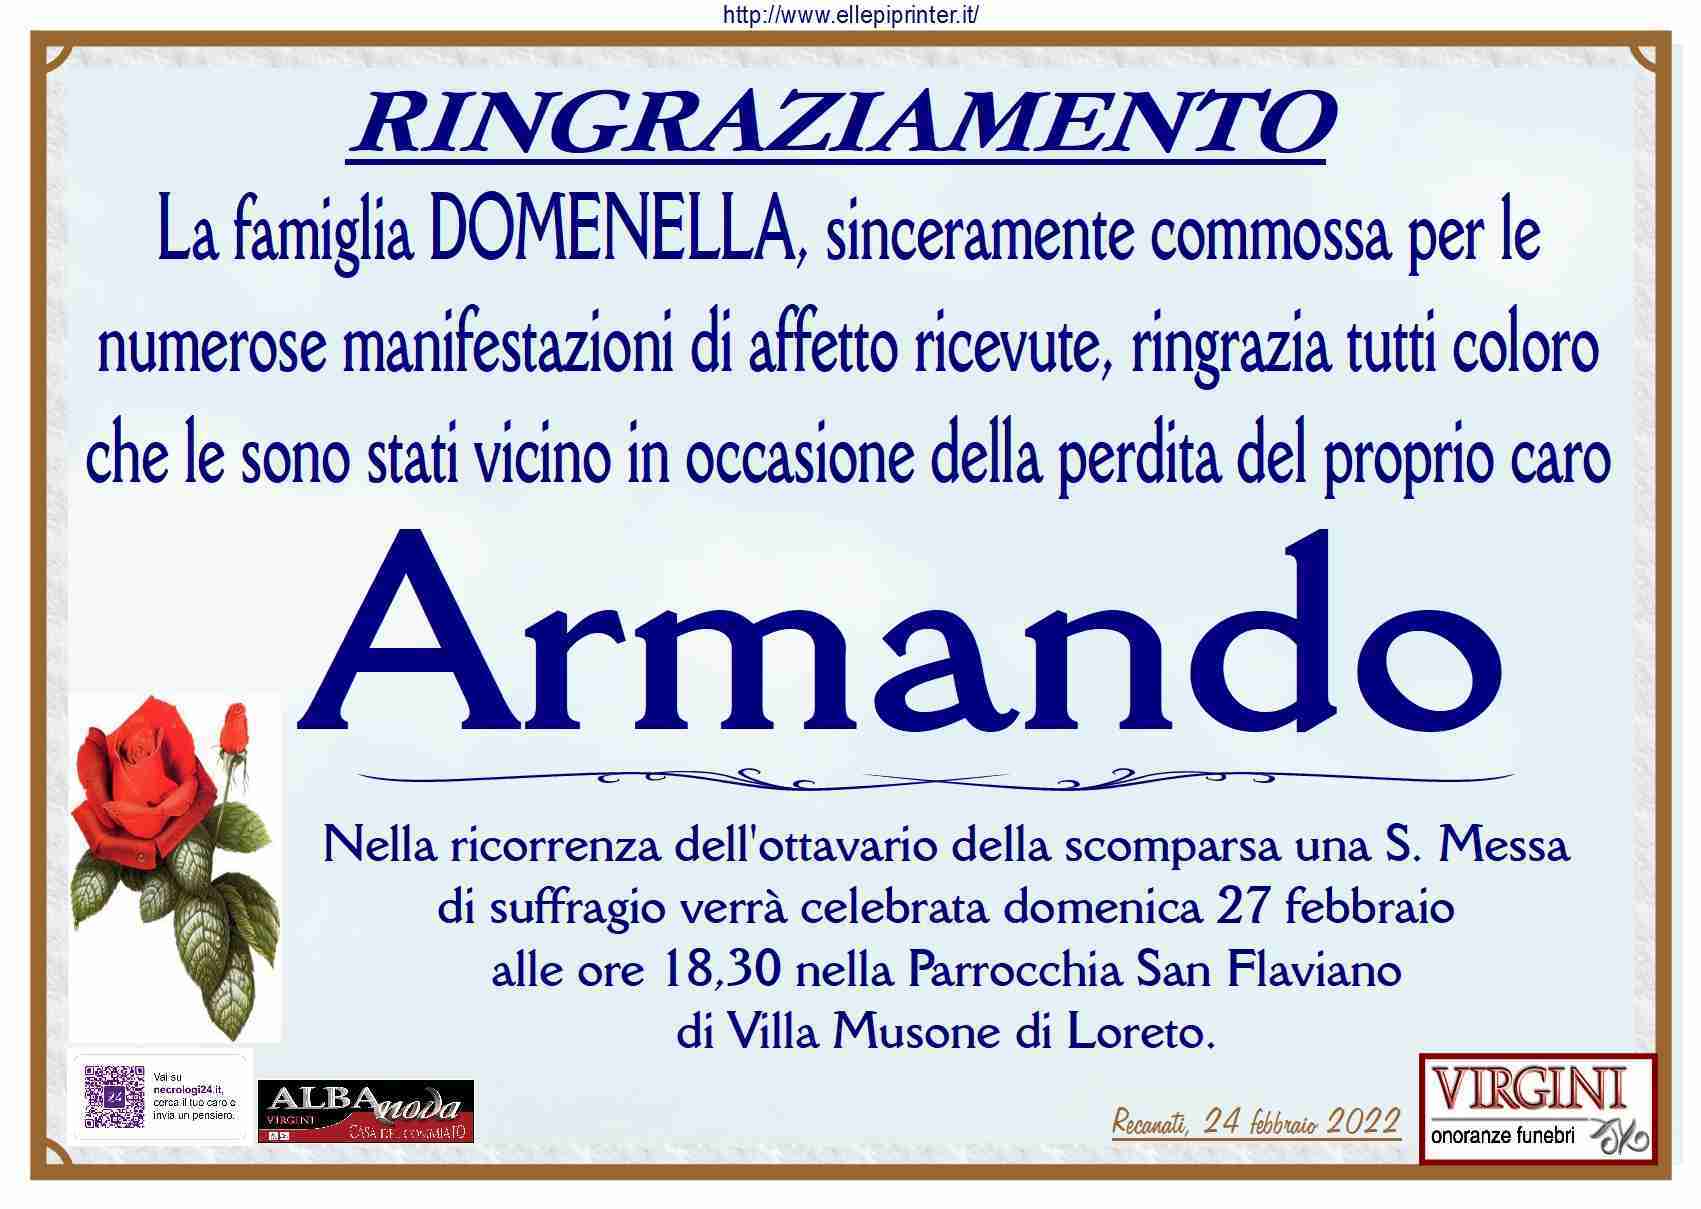 Armando Domenella